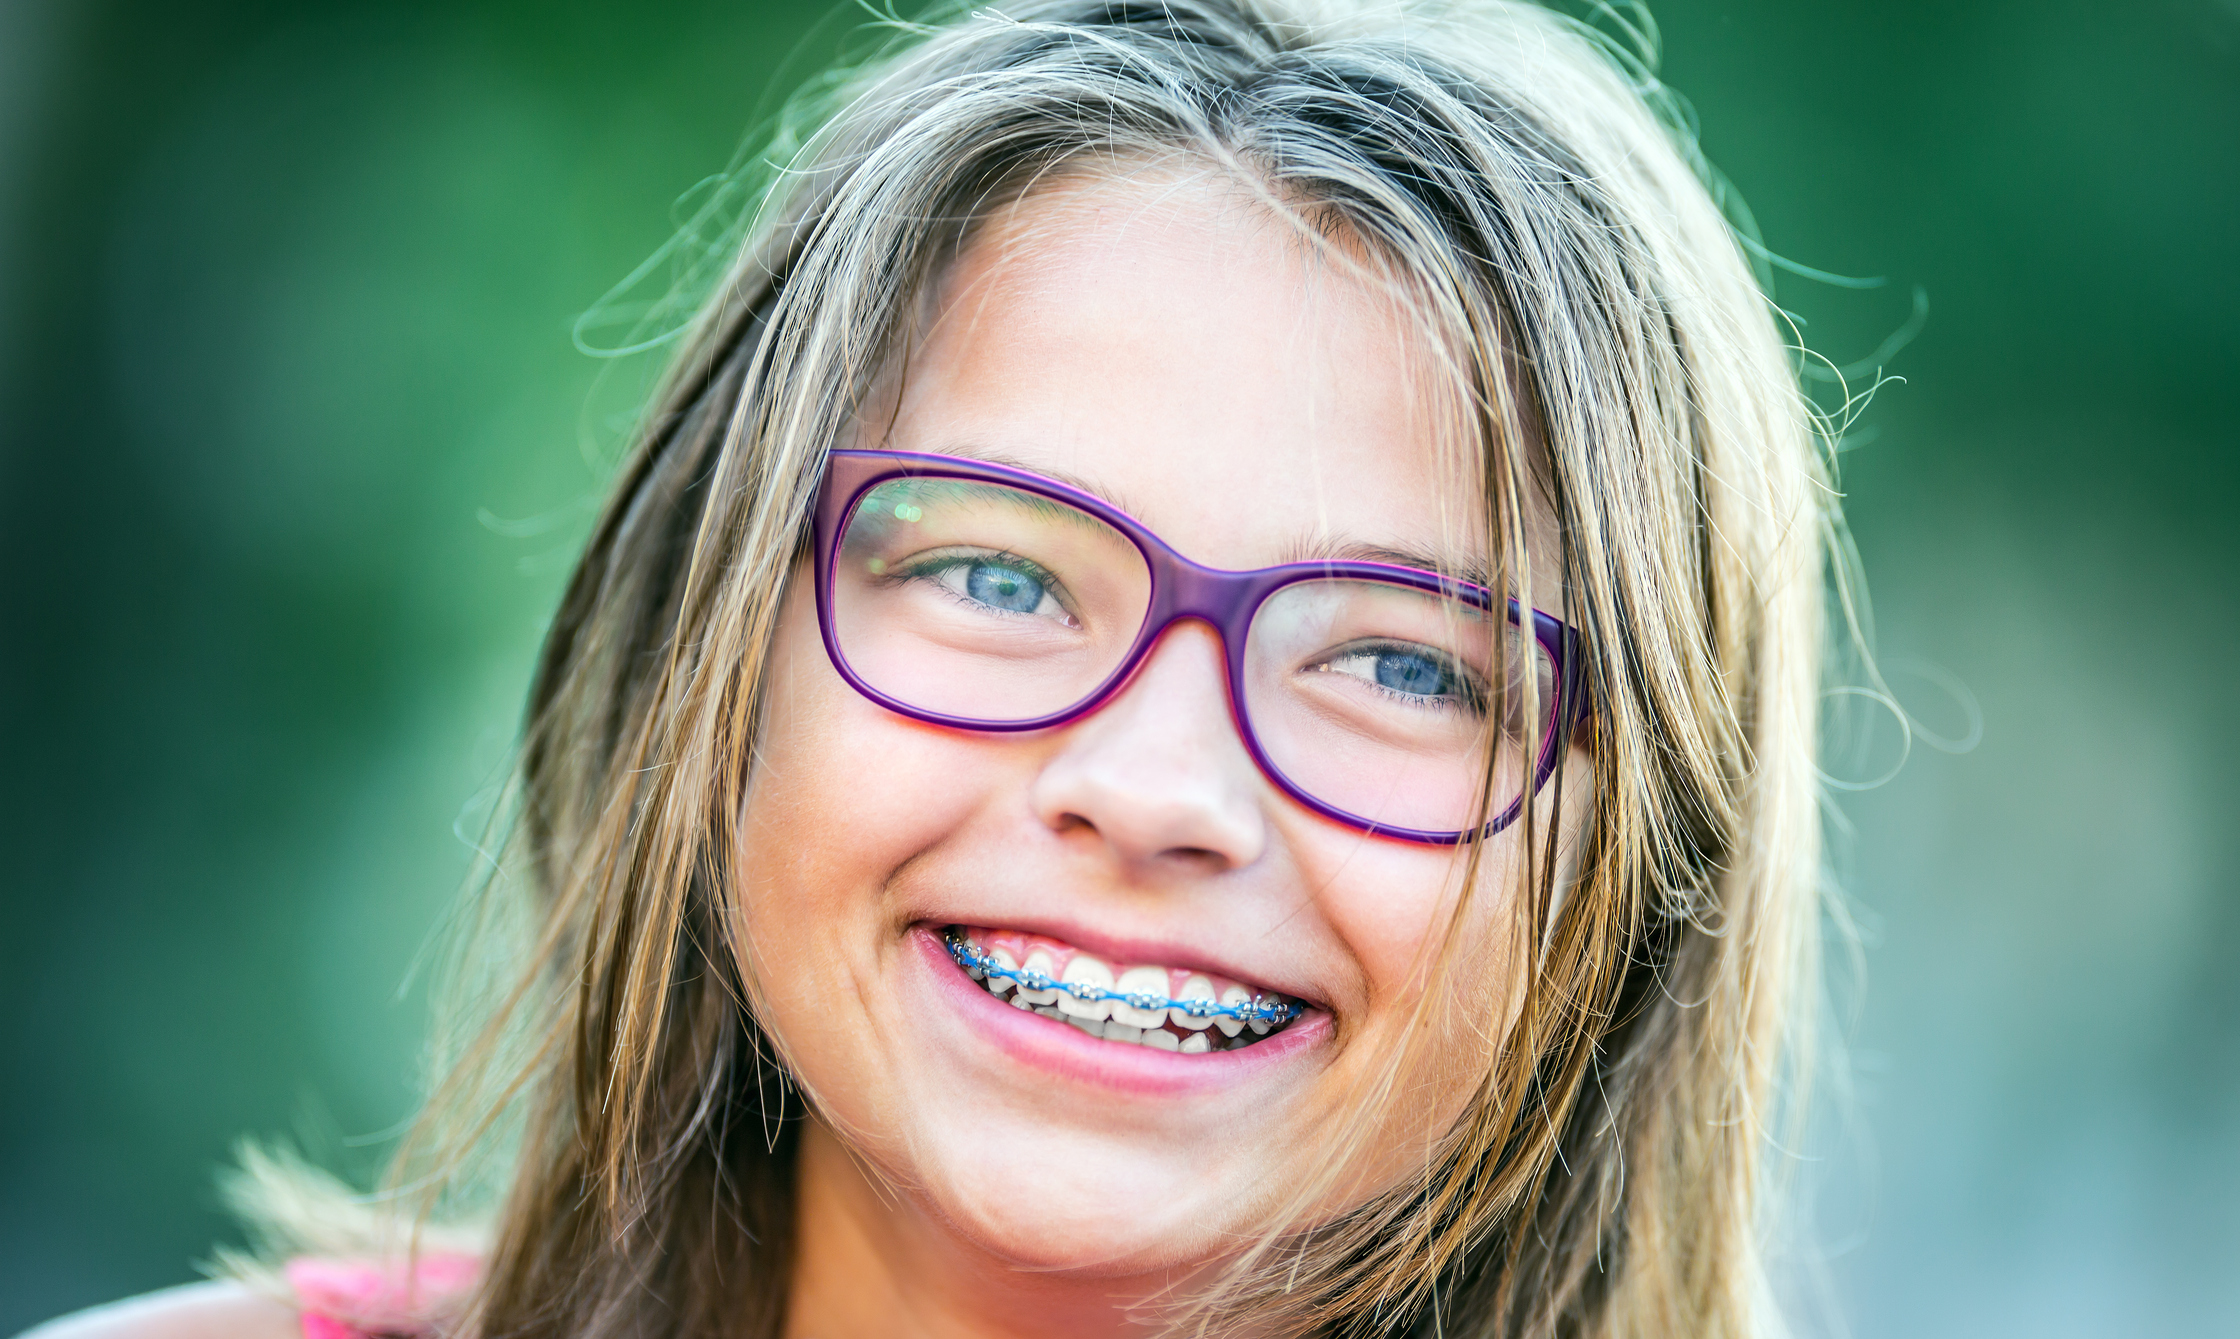 How do I know if my child needs braces?